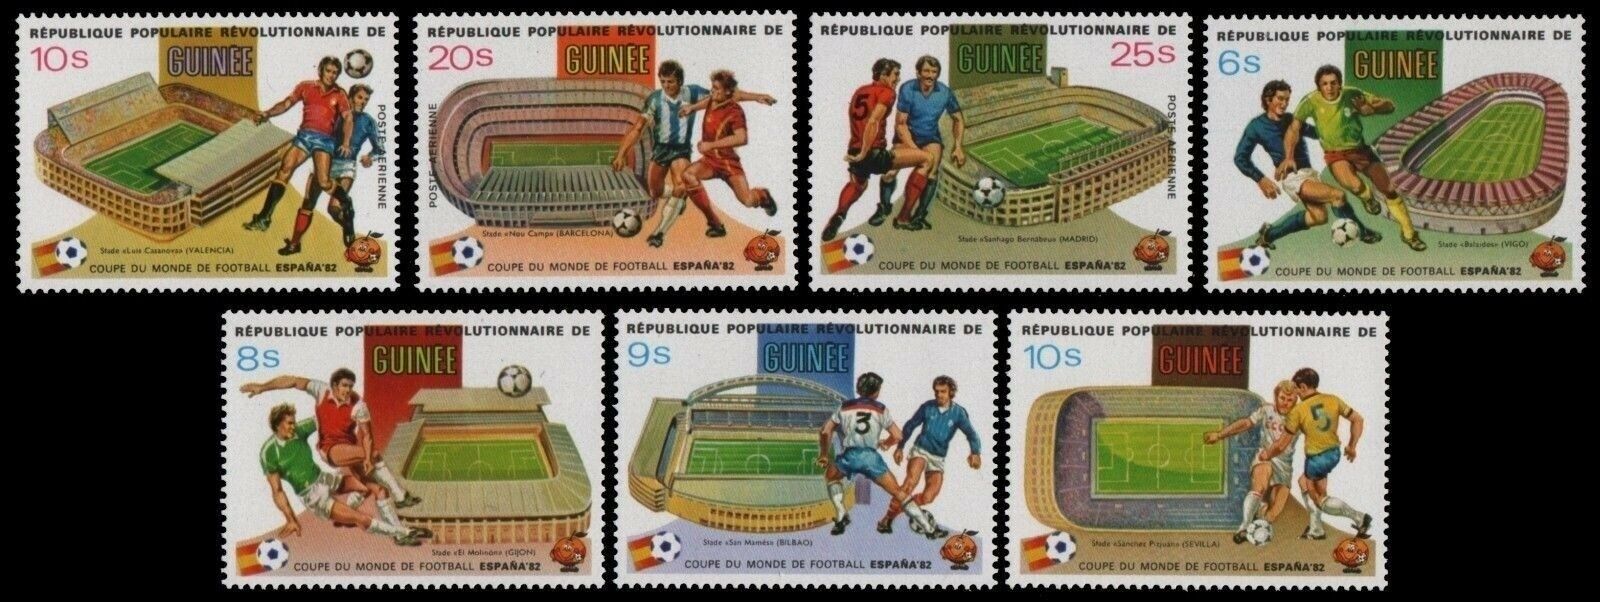 Guinea 1982 - CM fotbal, stadioane, serie neuzata